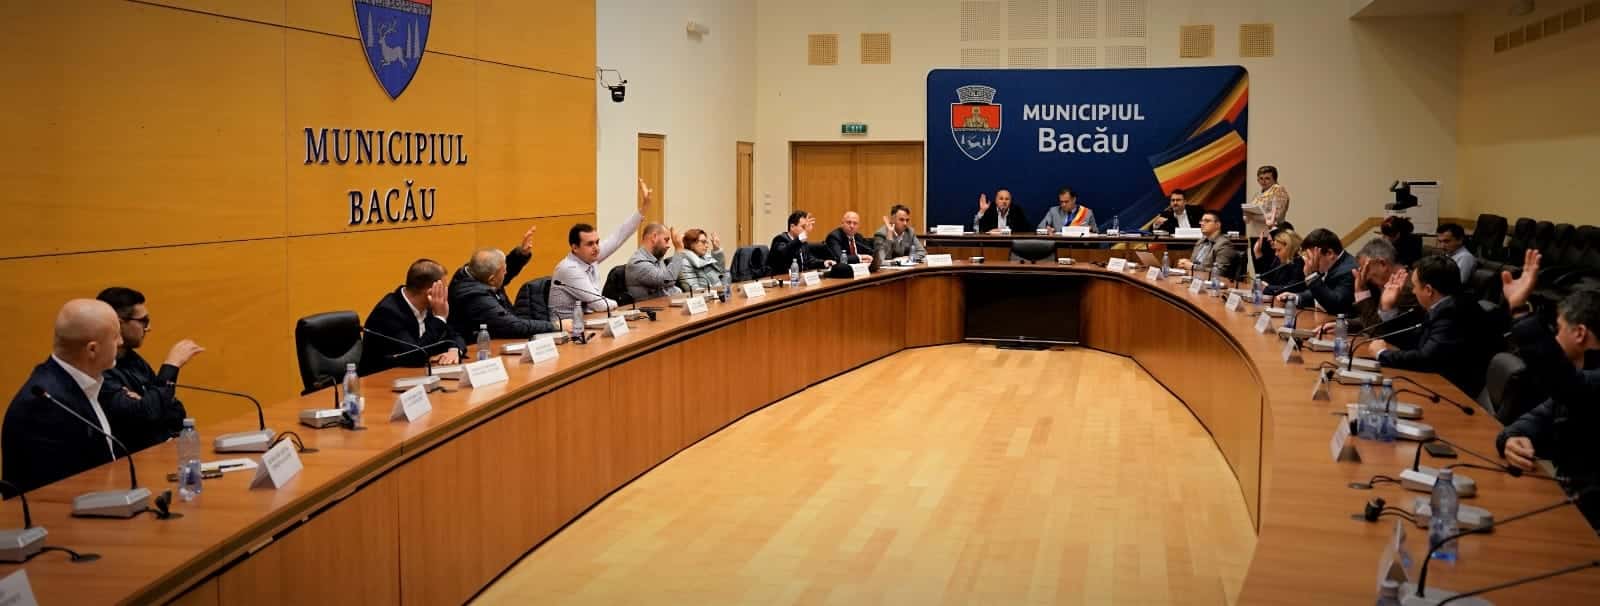 Președintele CJ Bacău, Valentin Ivancea: "Consiliul Local a aprobat trecerea fostului Spital Municipal în domeniul public al județului" - News Moldova